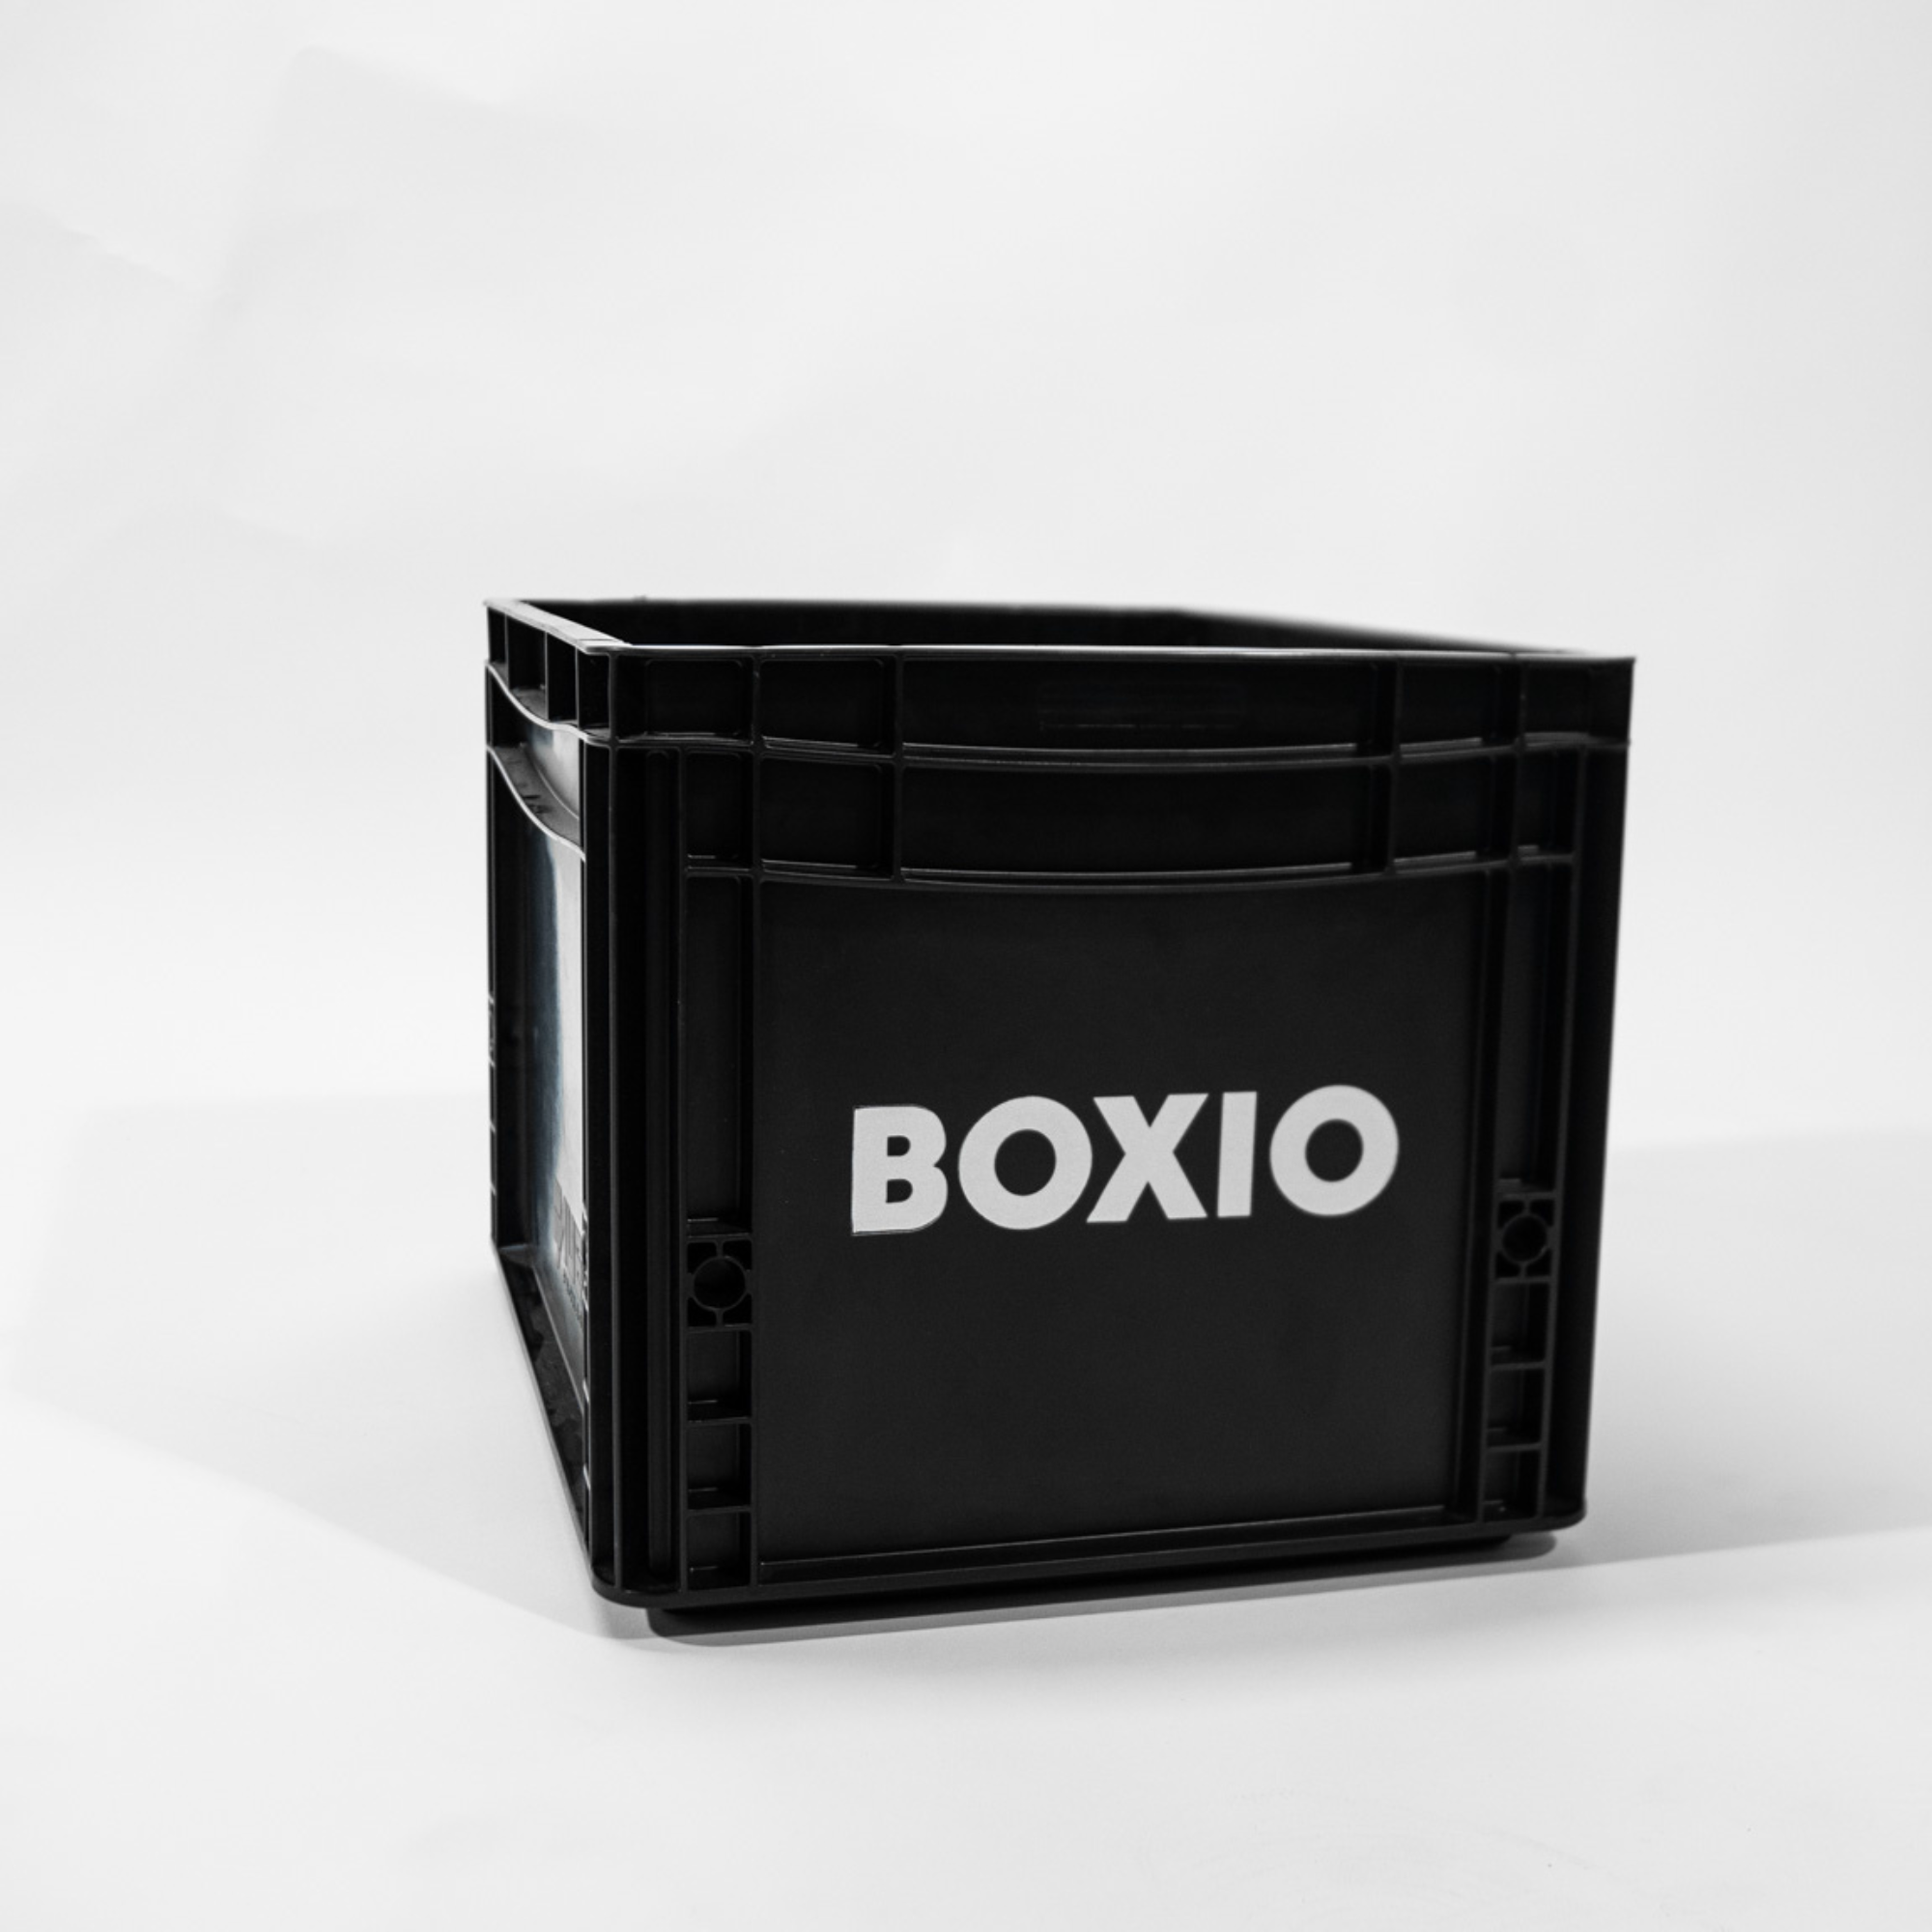 Eurobox "BOXIO" mit Bohrlöchern für BOXIO - TOILET & WASH